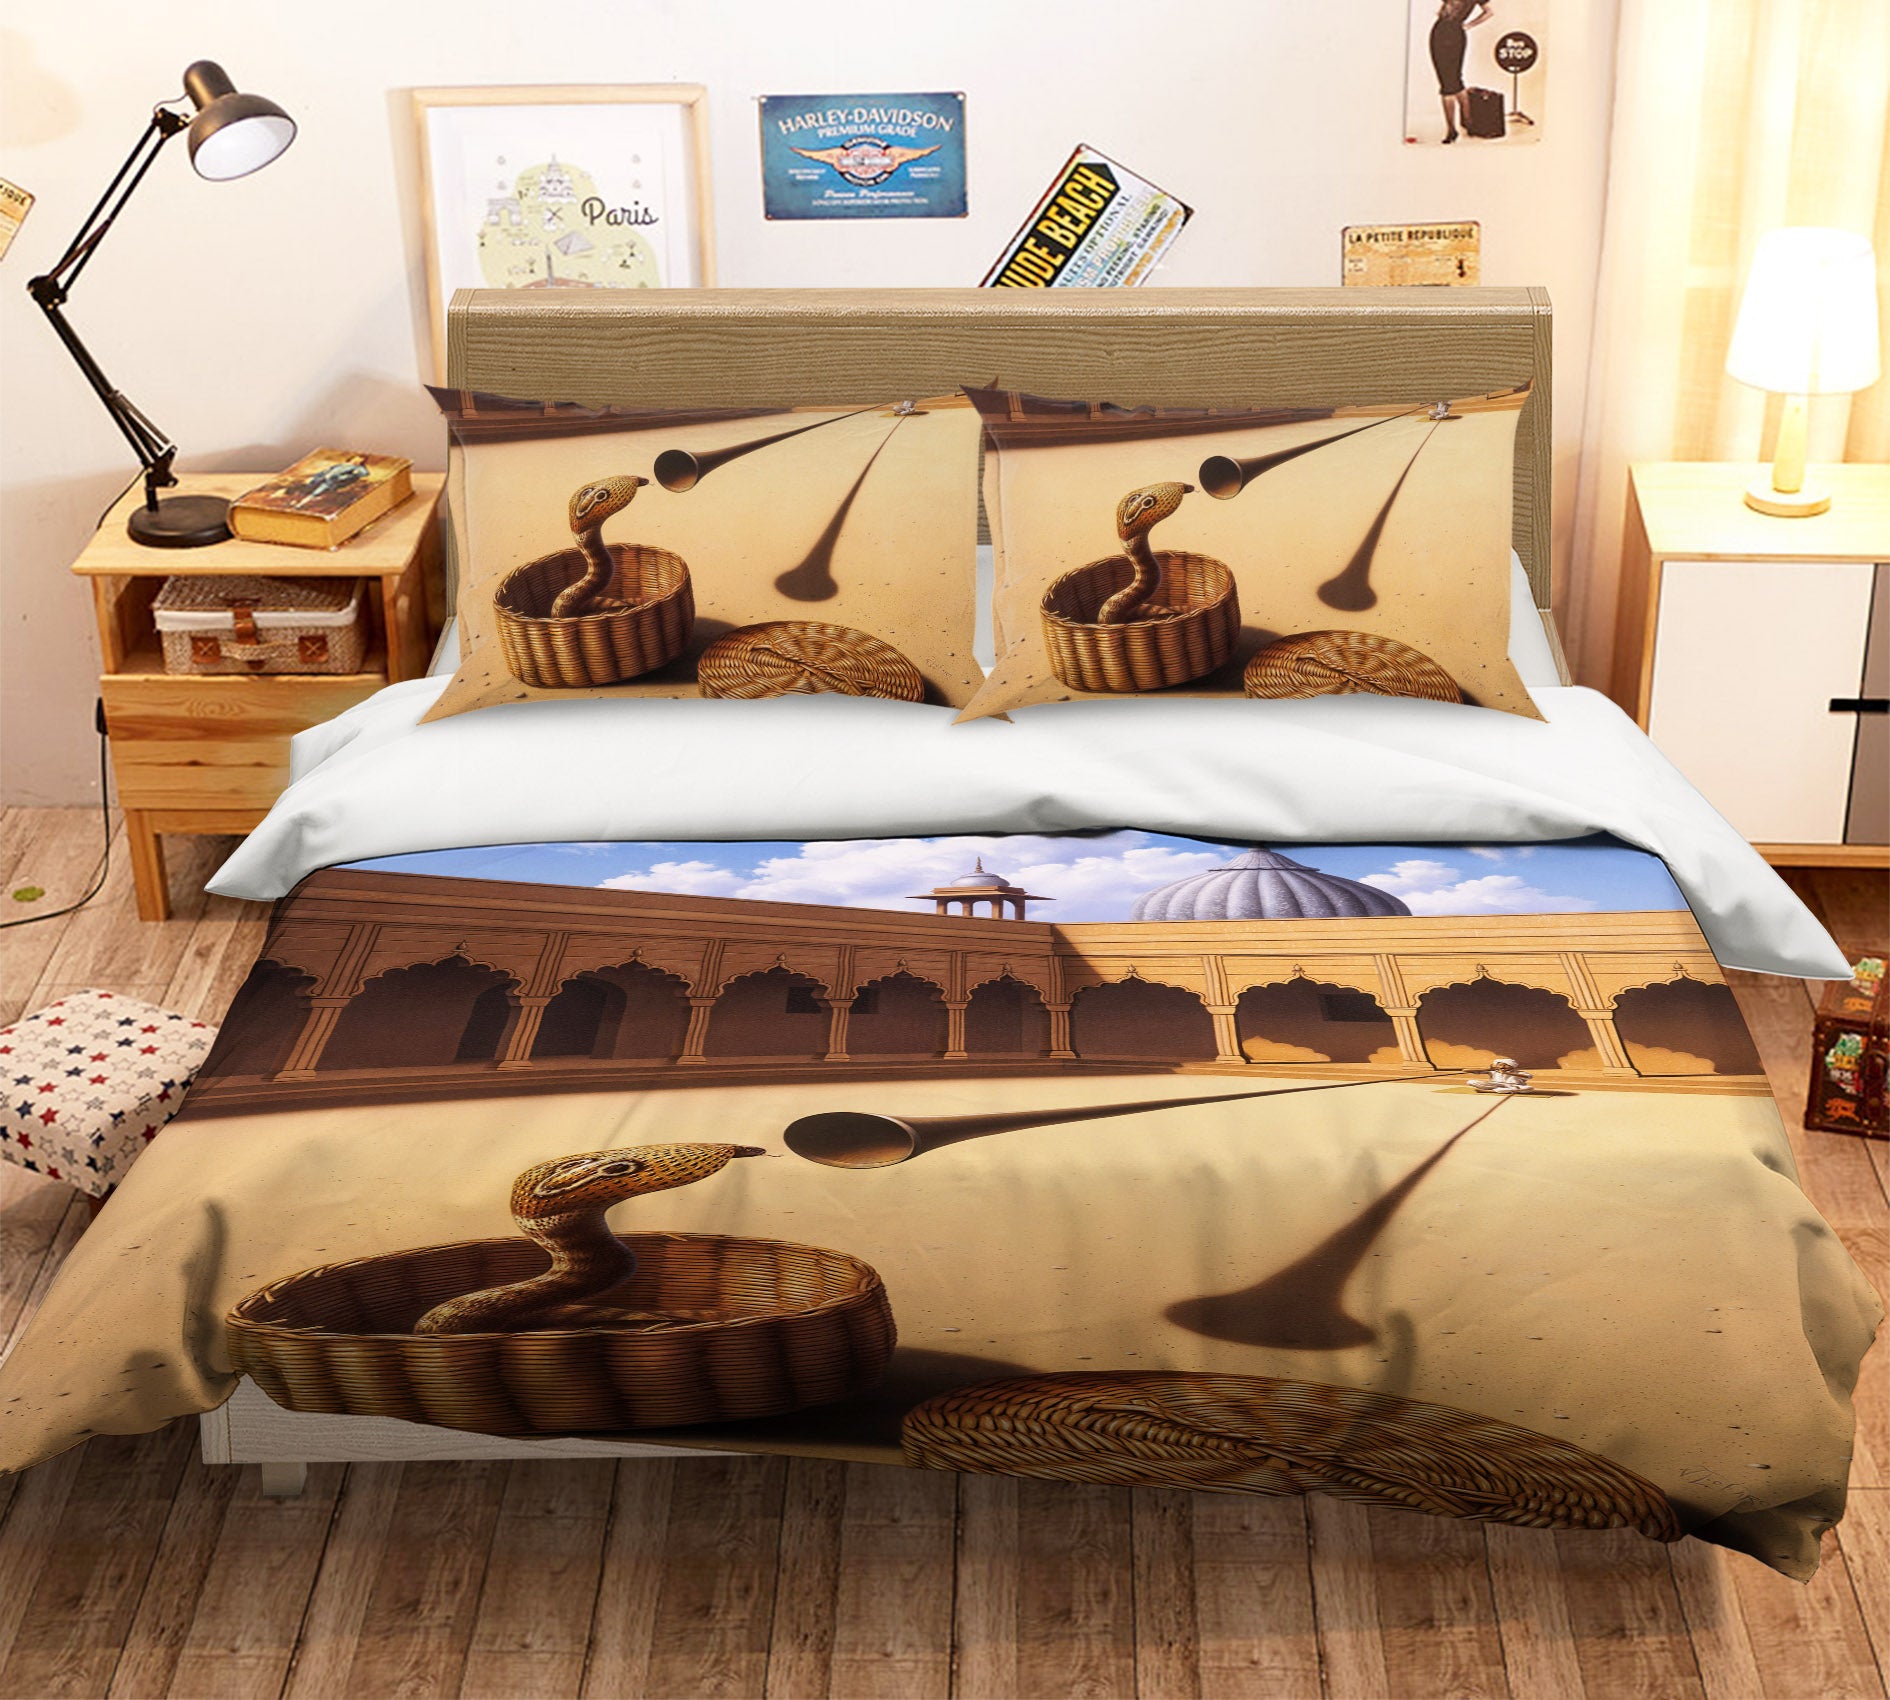 3D Snake Charmer 86044 Jerry LoFaro bedding Bed Pillowcases Quilt